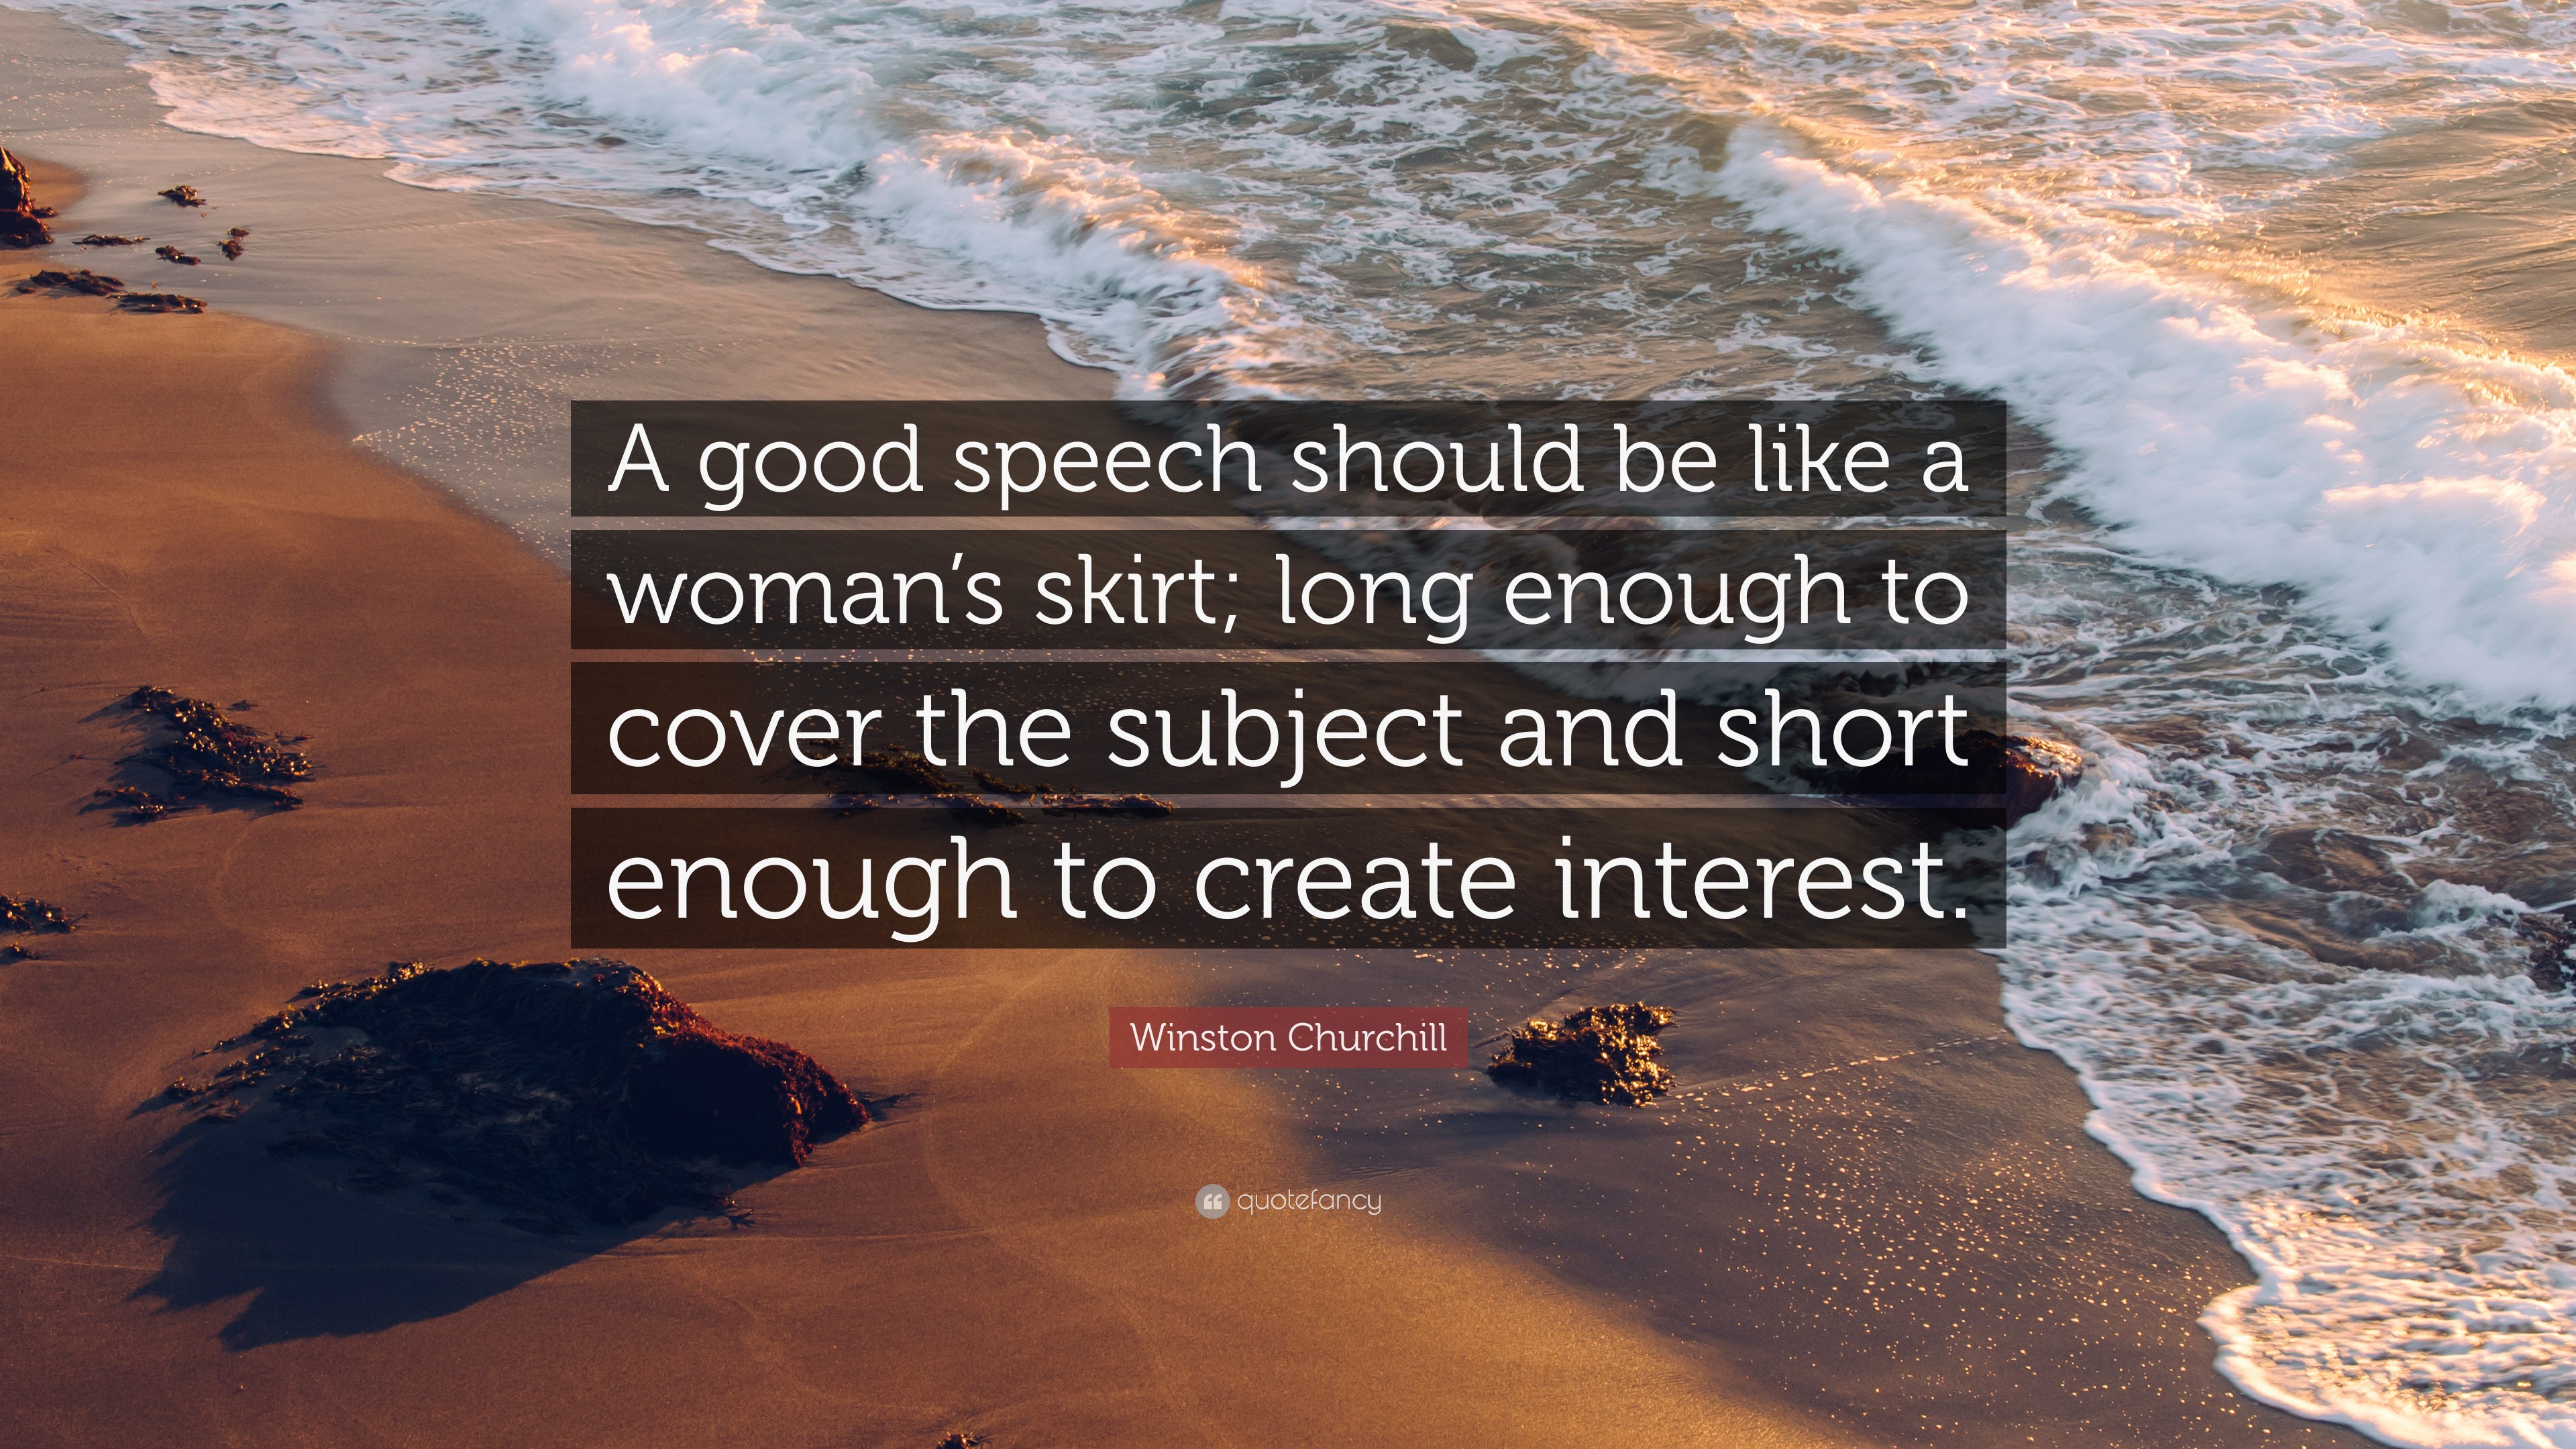 a speech should be like a skirt